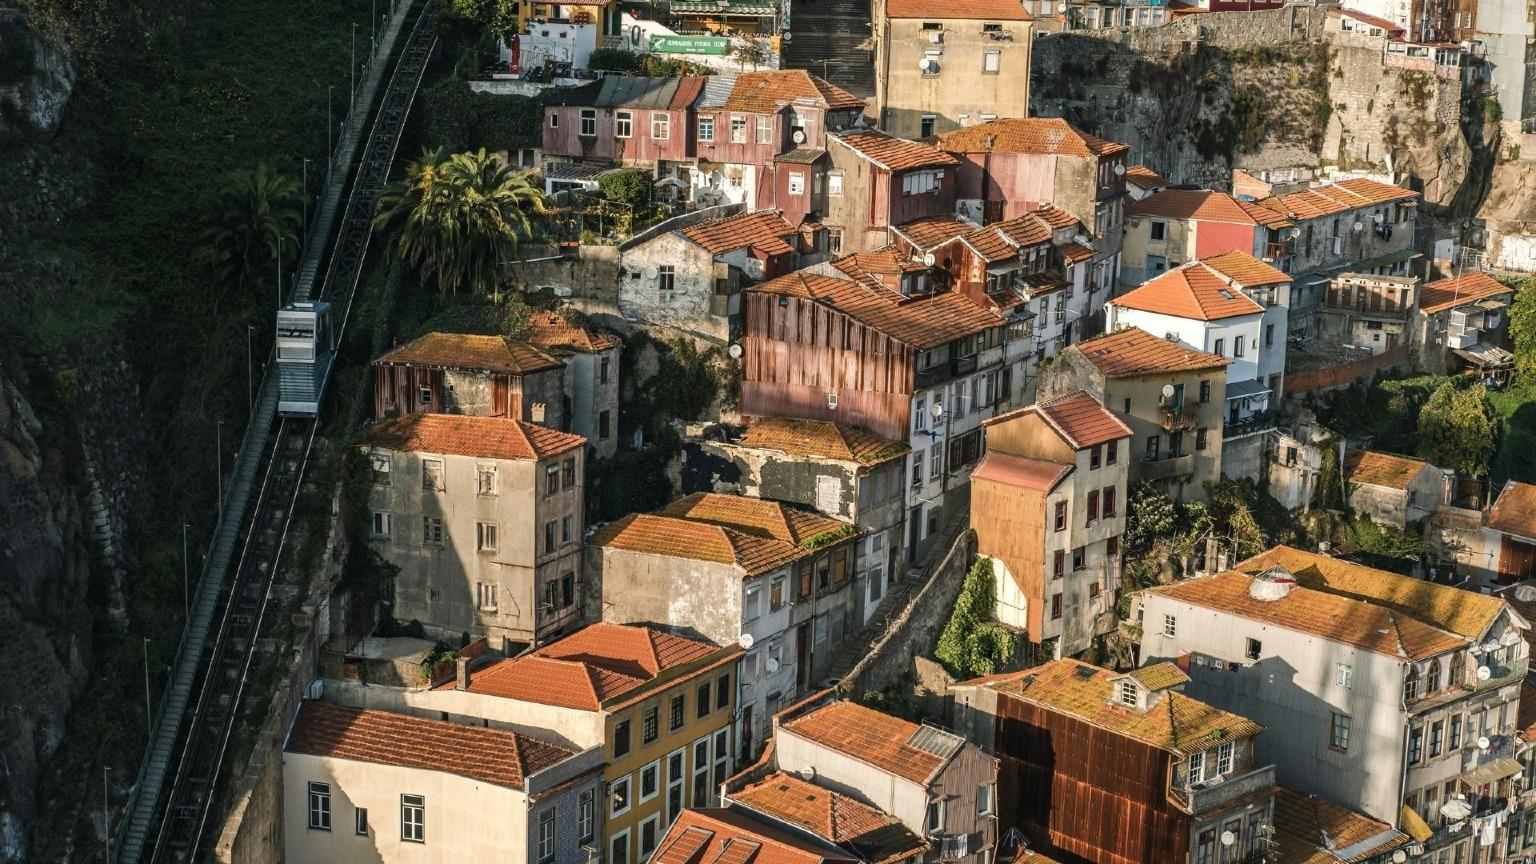 Le Funiculaire dos Guindais monte du niveau supérieur de Porto (Batalha) au niveau inférieur (Ribeira), offrant une vue imprenable sur le paysage urbain.